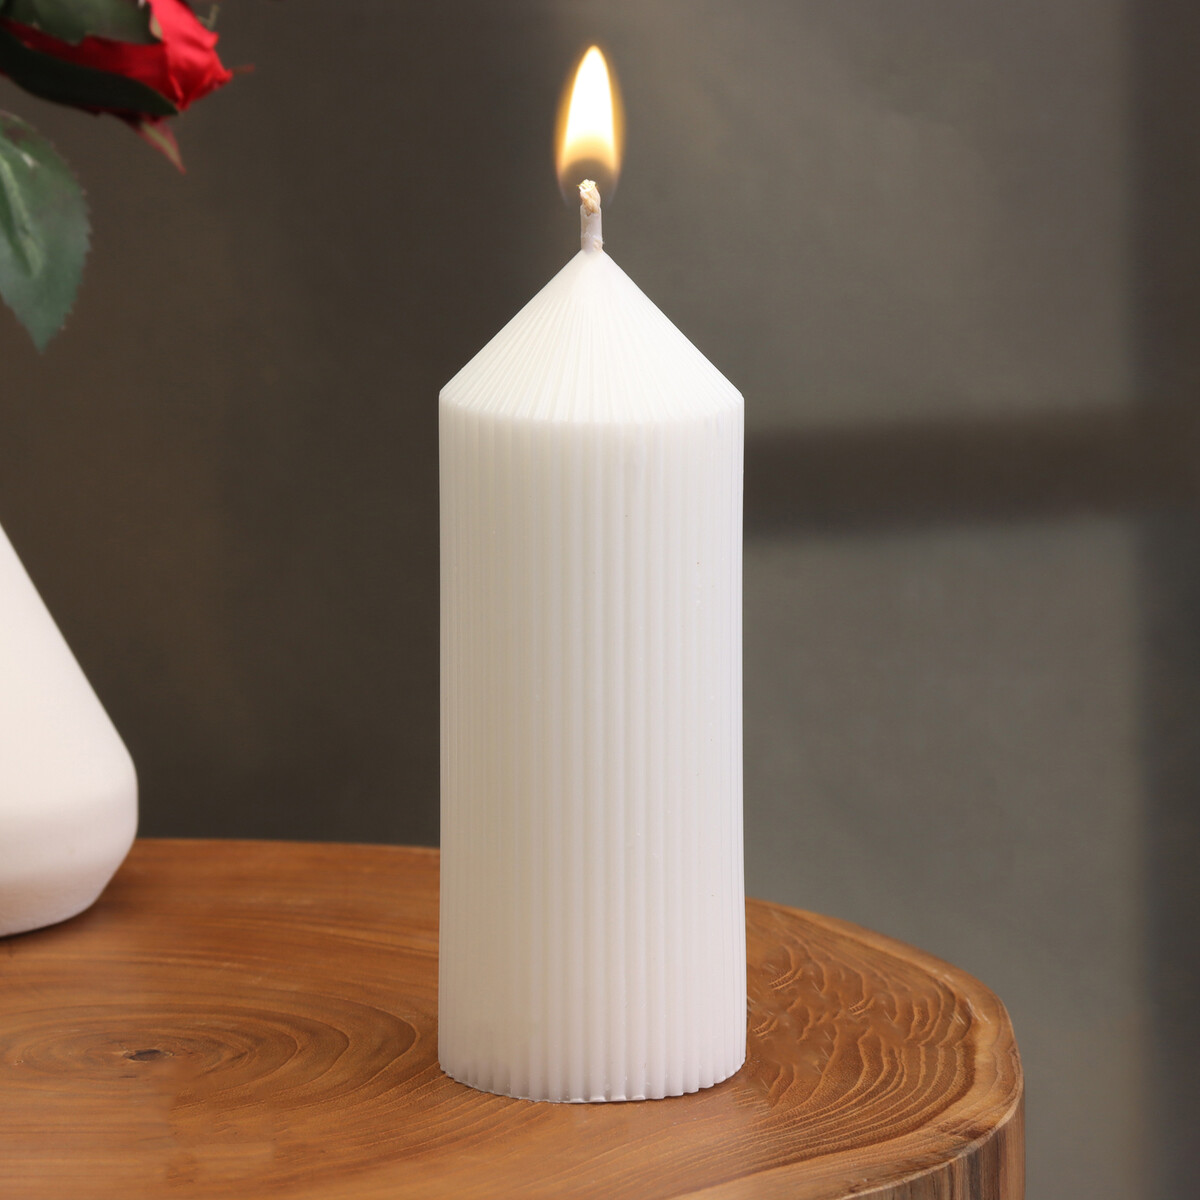 Свеча-цилиндр с гранями, 5х13 см, белая, 10 ч свеча цилиндр 5х12 см белая